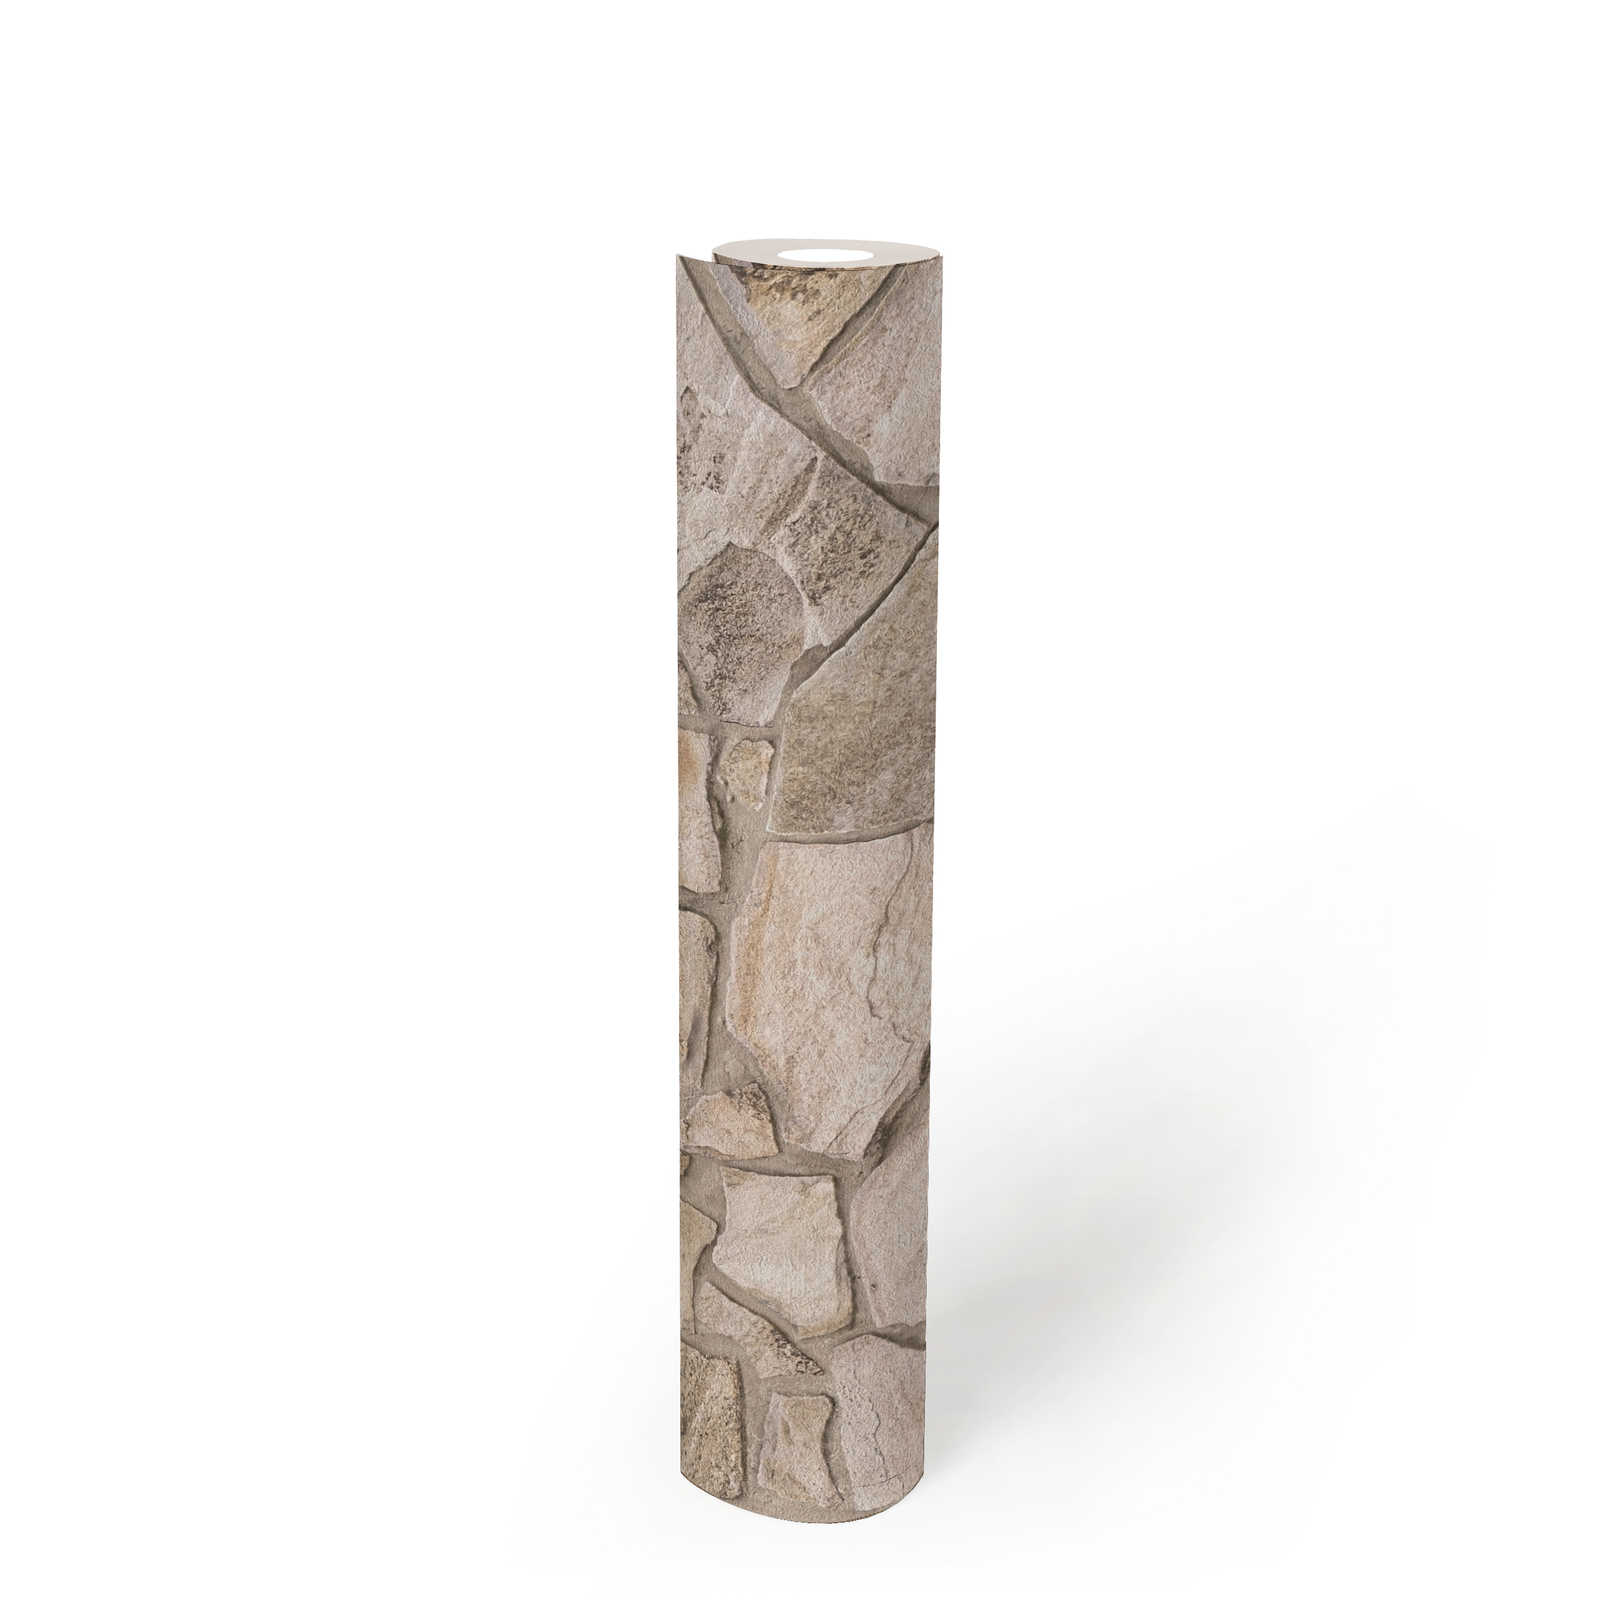             Vliesbehang in steenlook met 3D-steenwerk - beige, grijs, bruin
        